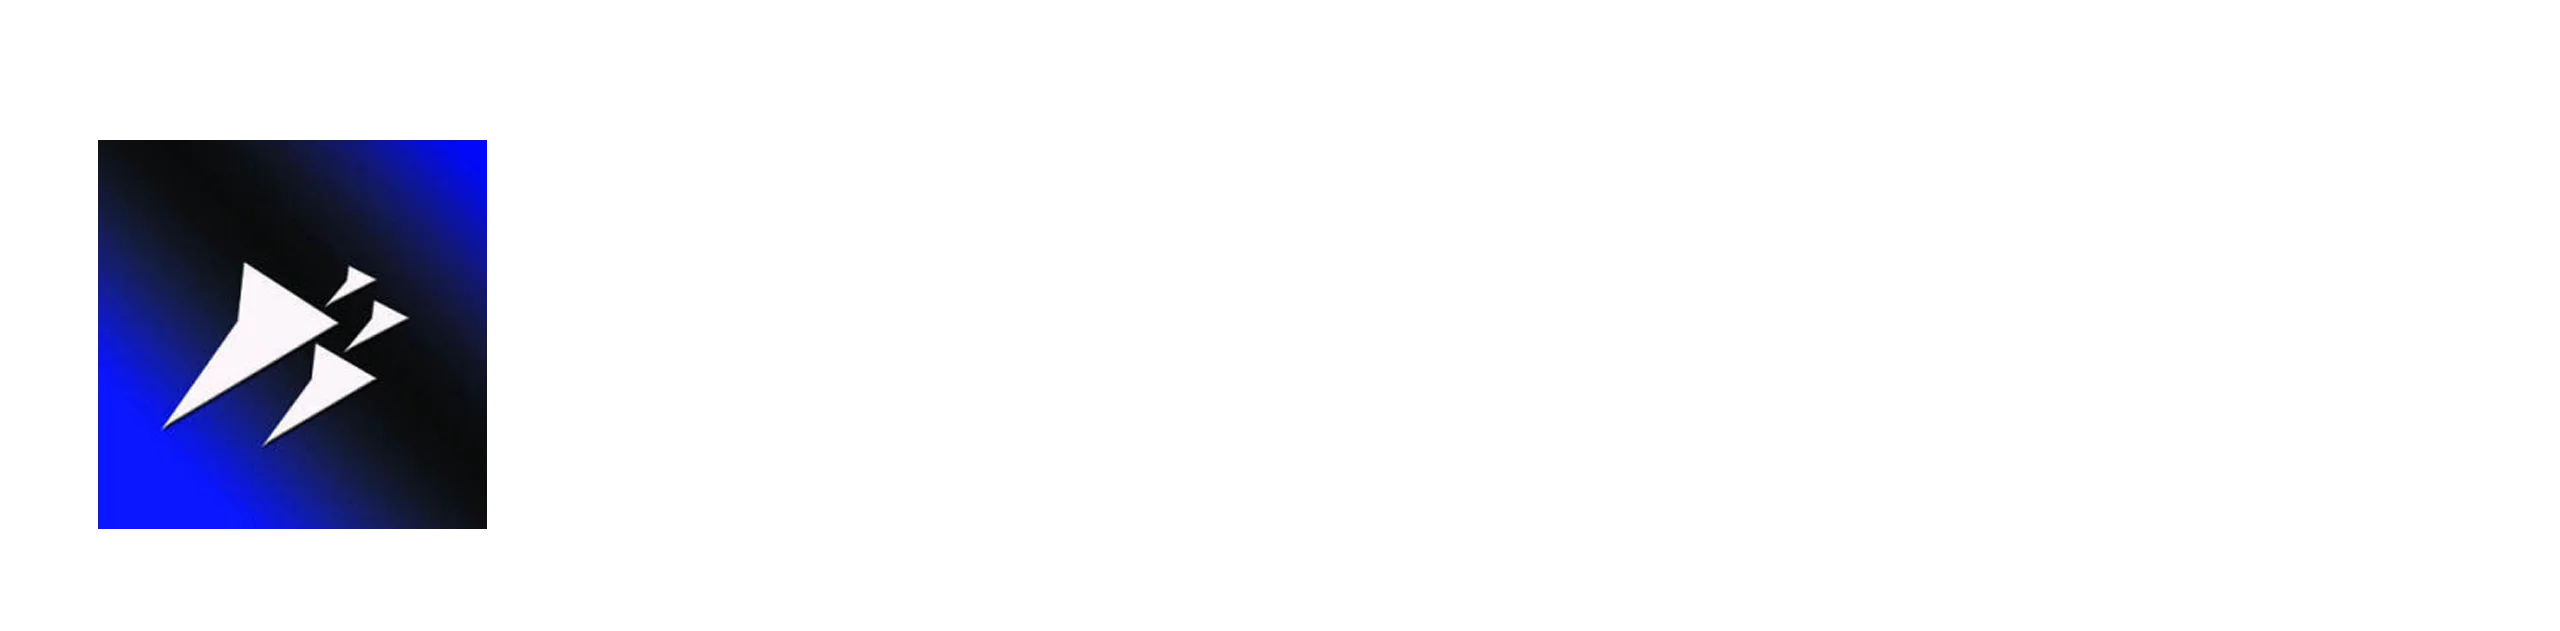 JB Electric logo in white